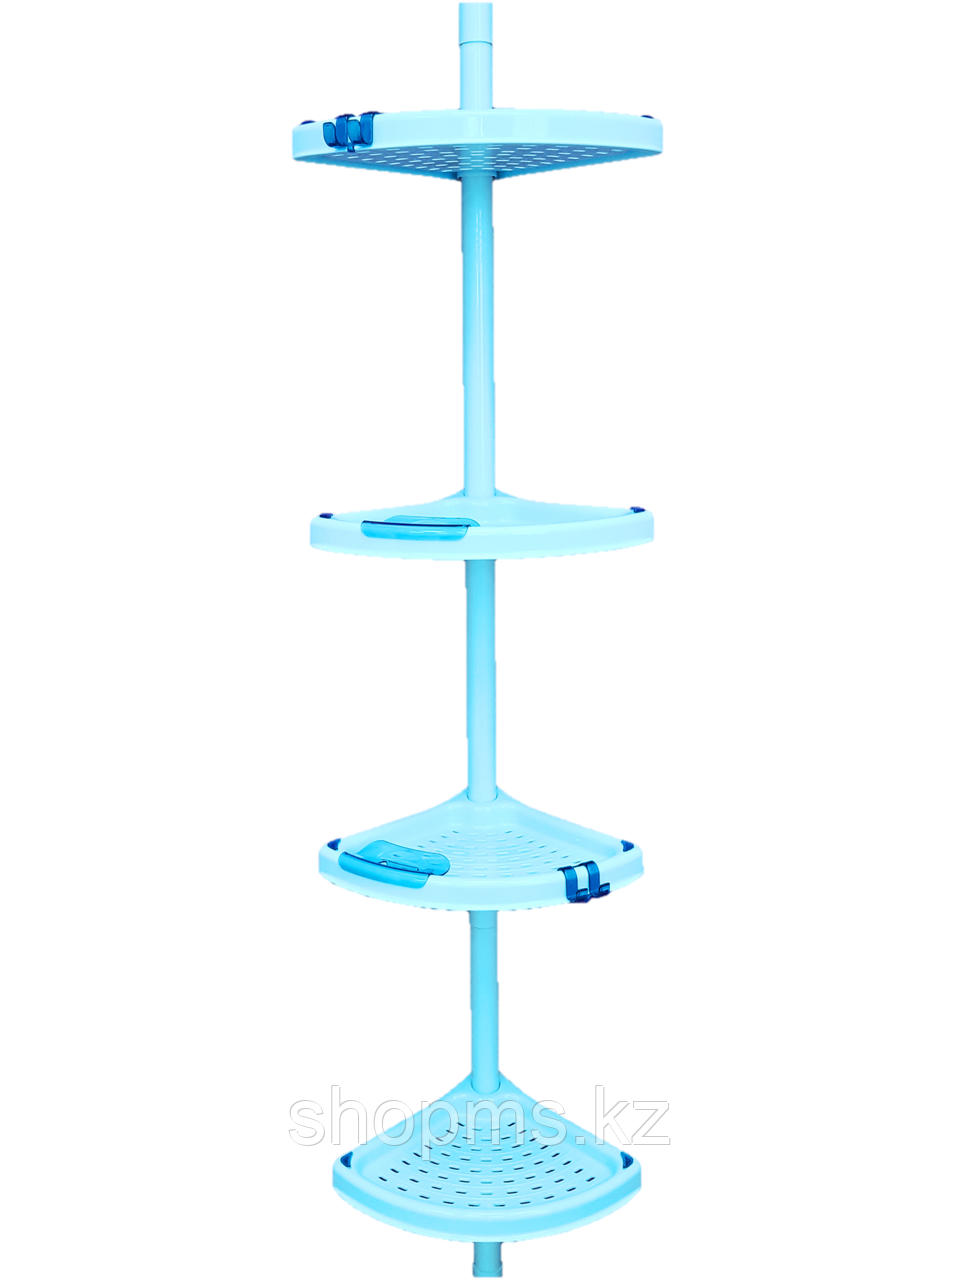 Угловая полка (голубая), телескопич. пластиковая трубка 135-260см, 4 полки 24,5*24,5 см, 2 M-N02-02